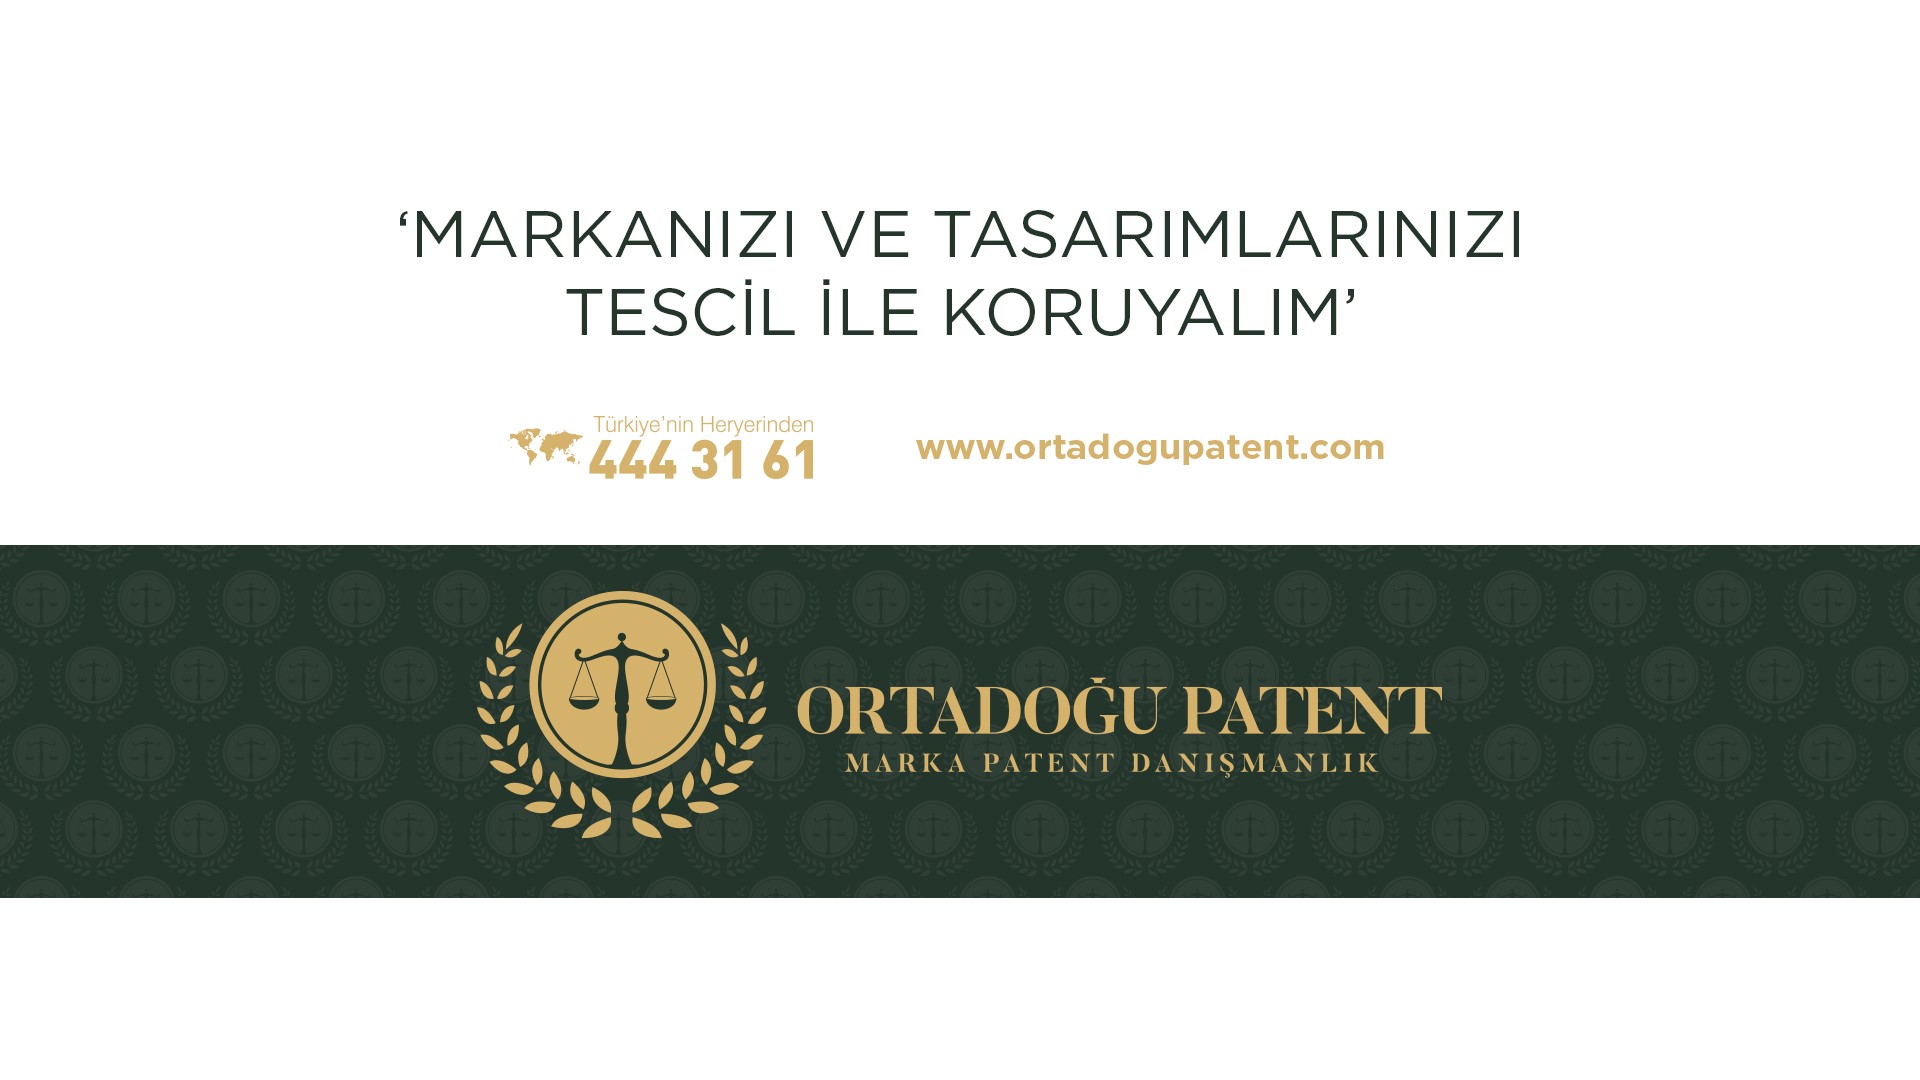  Marka Tescil Ankara 